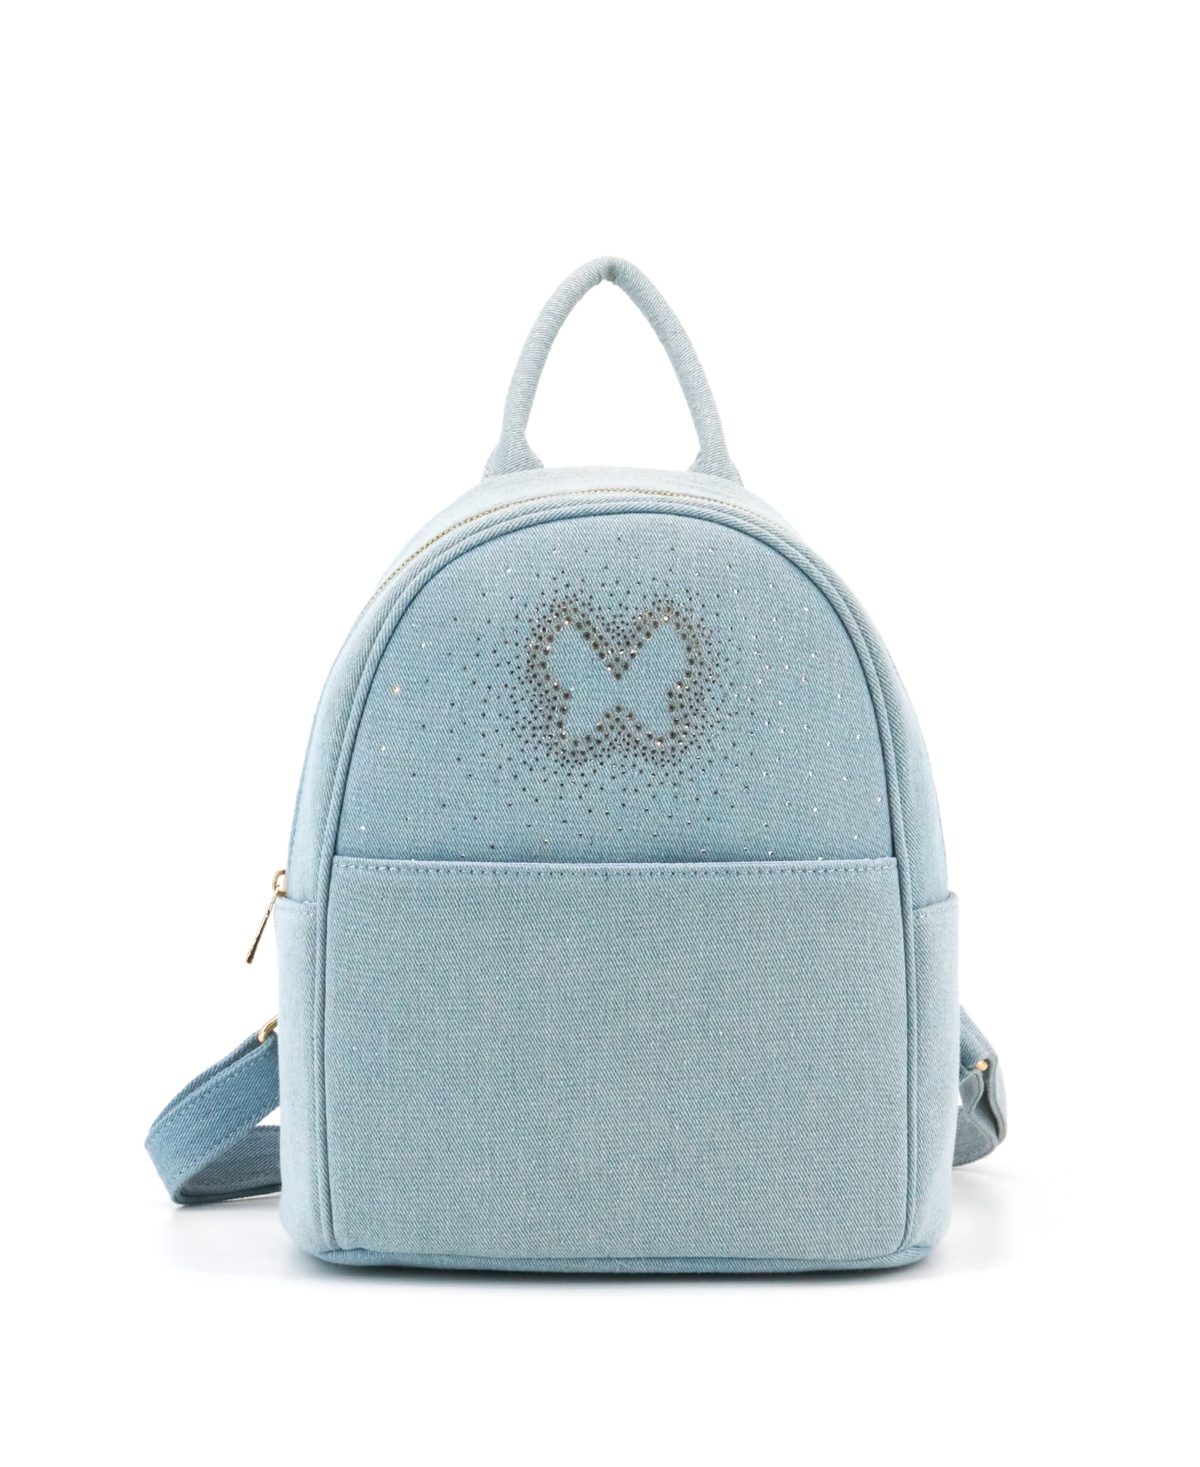 Nabi Denim Rhinestone Small Backpack - Denim Blue